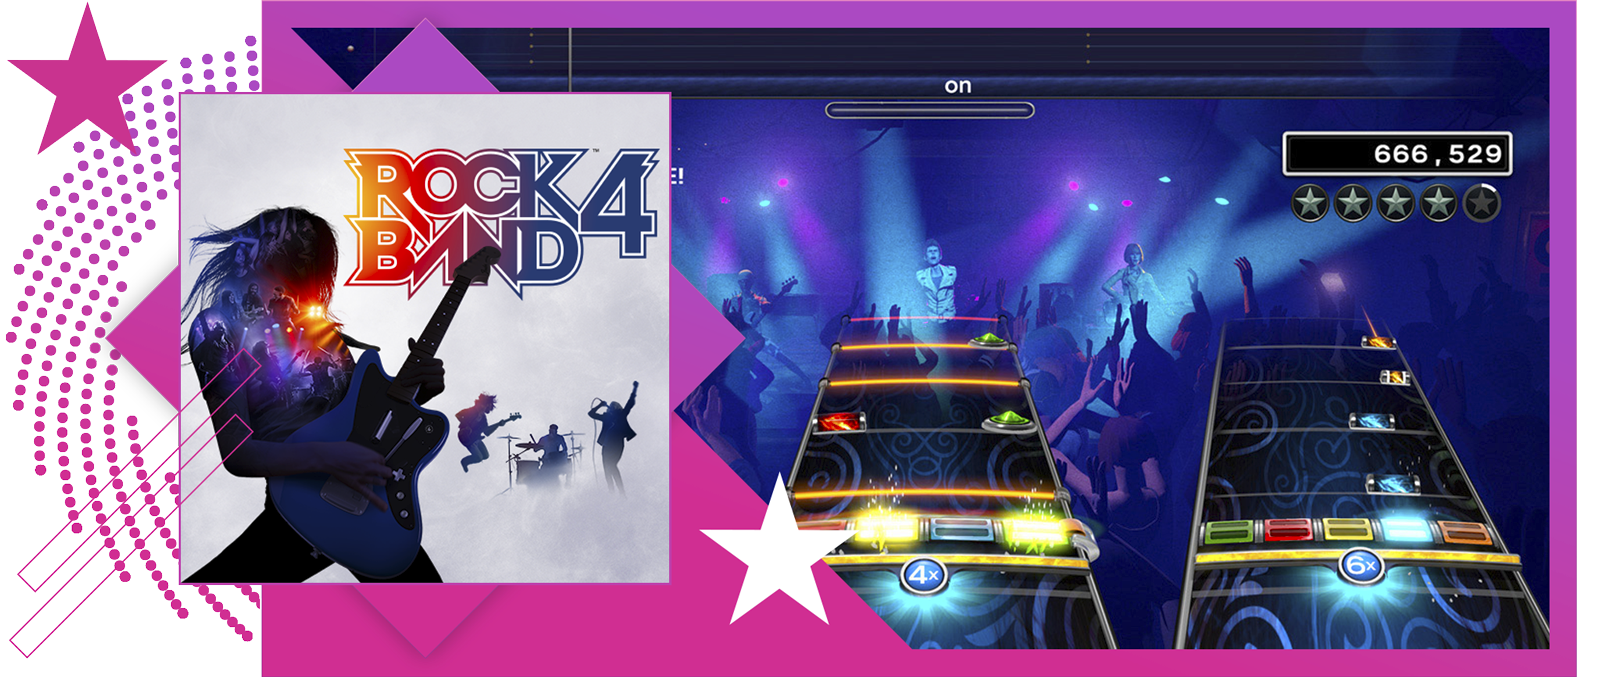 Най-добрите ритъм игри представят иконографско изображение и геймплей от Rock Band 4.